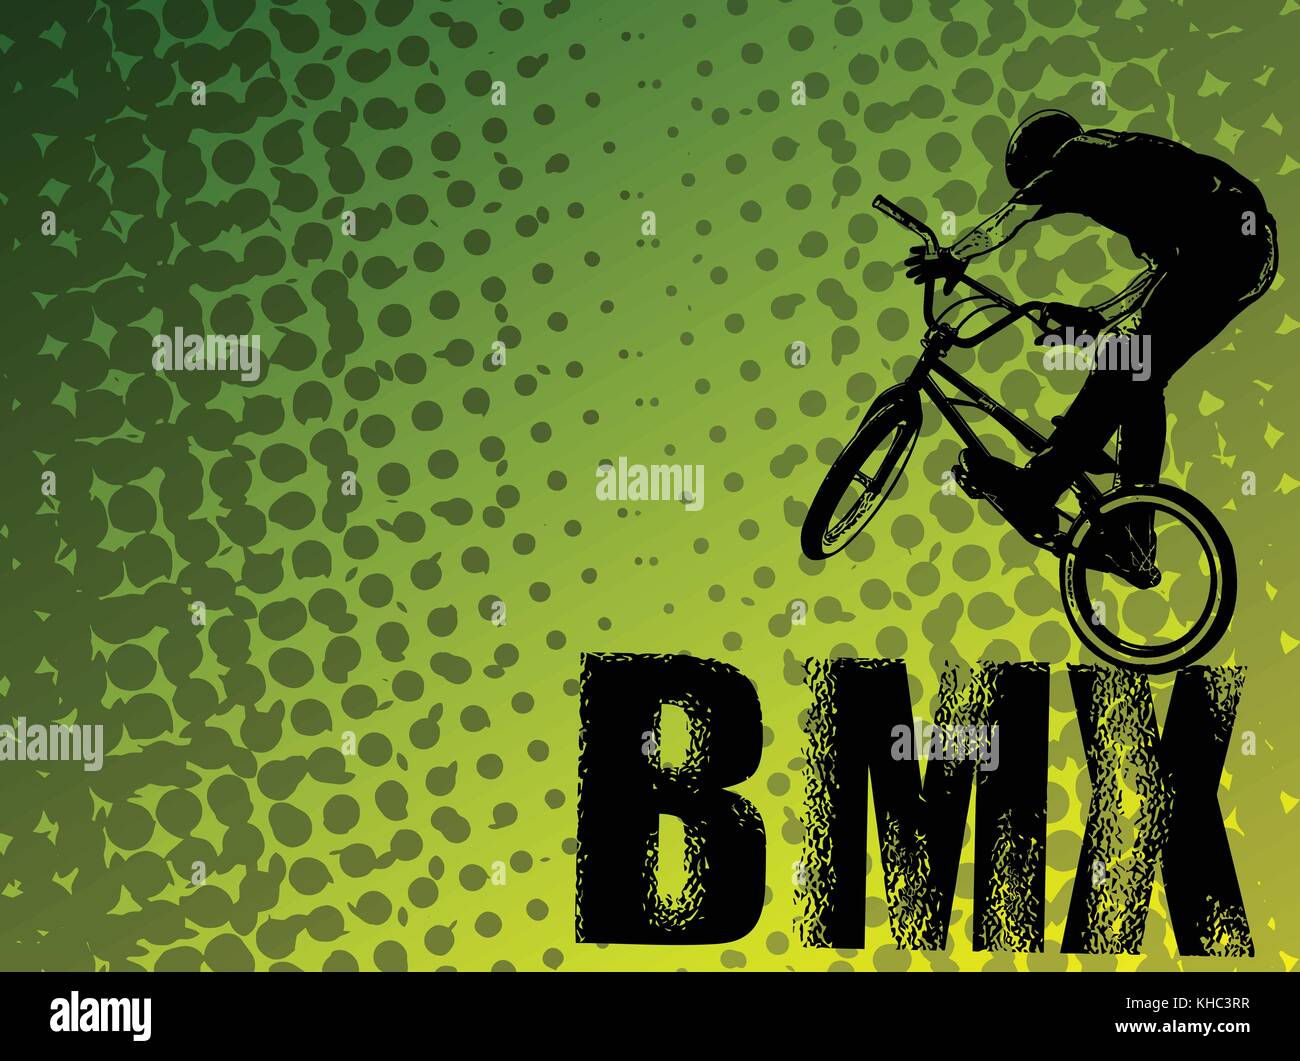 BMX Stunt Radfahrer auf dem abstrakten Hintergrund - Vektor Stock Vektor